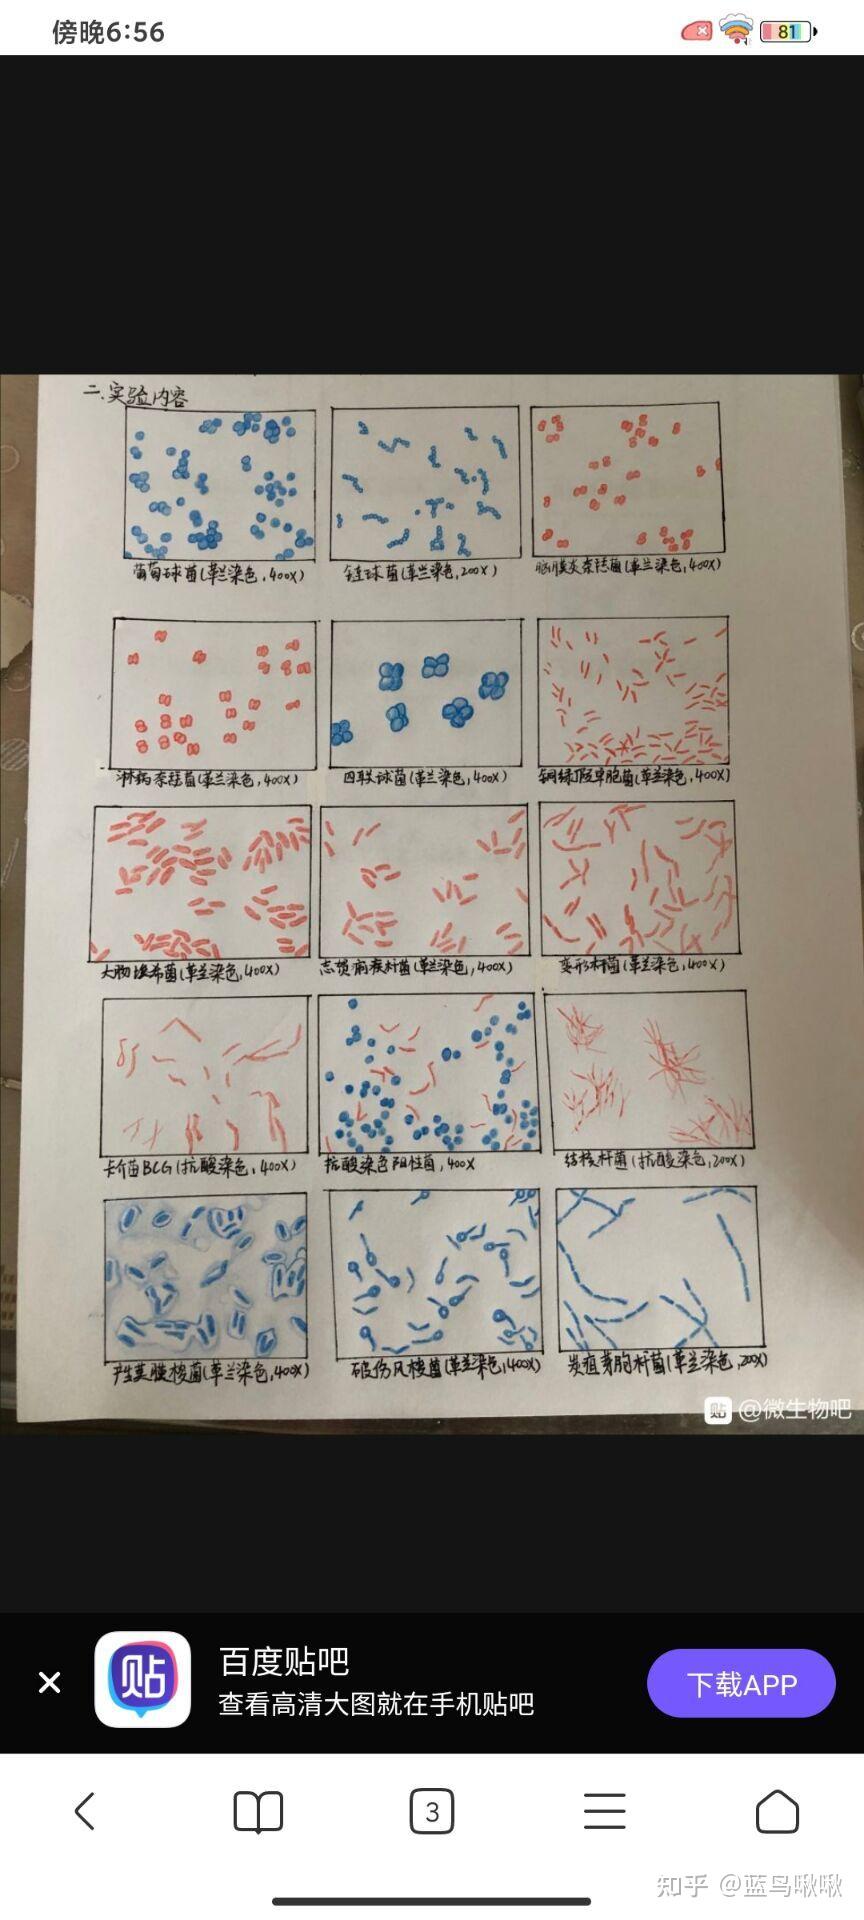 有葡萄球菌,结核杆菌,大肠杆菌,蜡样芽孢杆菌,炭疽杆菌的红蓝铅笔手绘